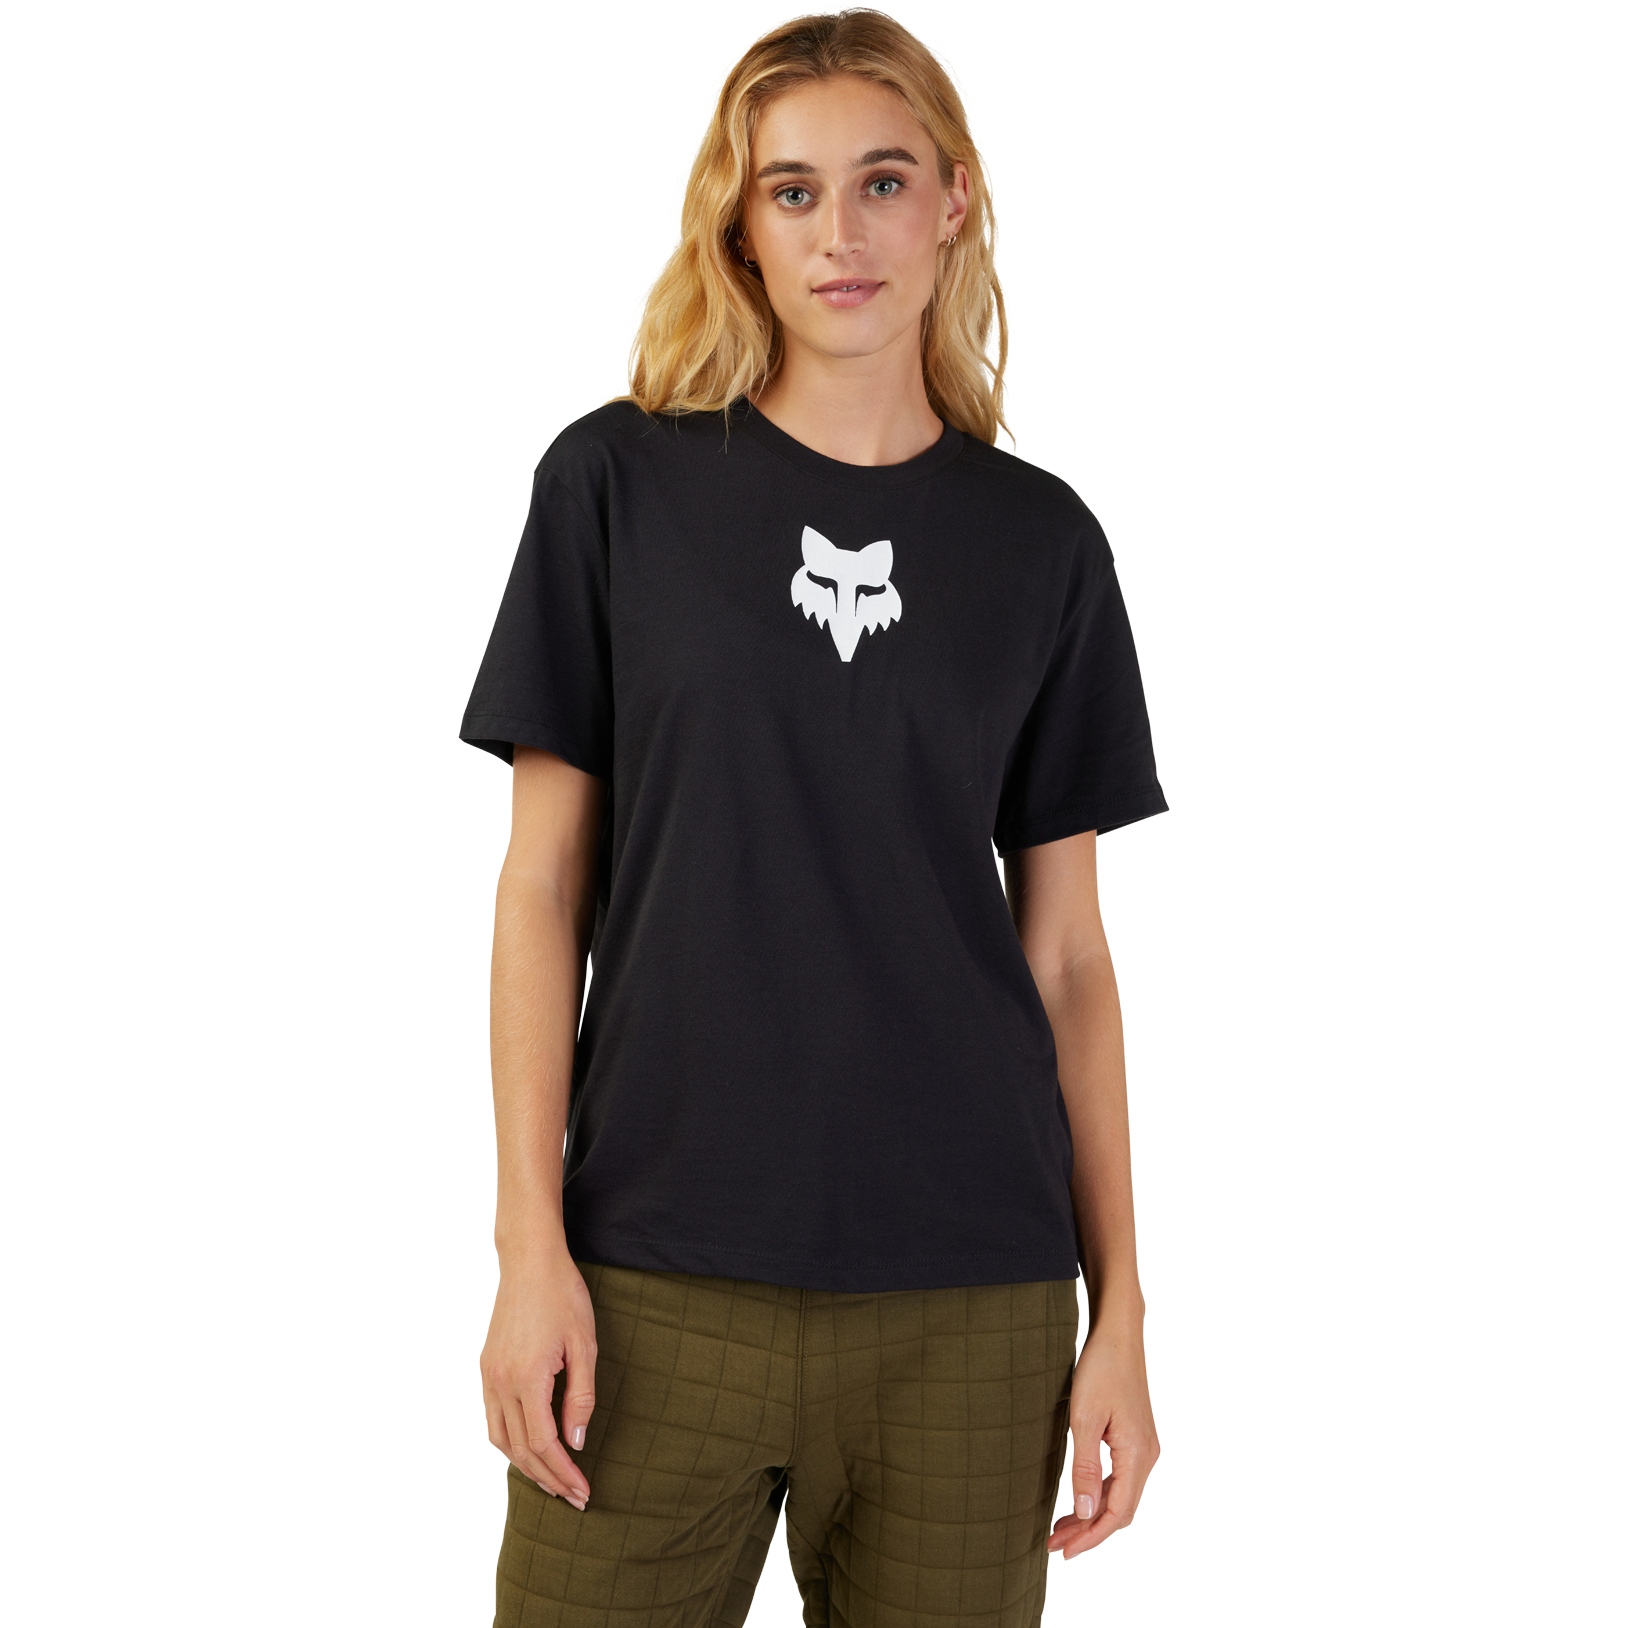 Produktbild von FOX Head Kurzarmshirt Damen - schwarz